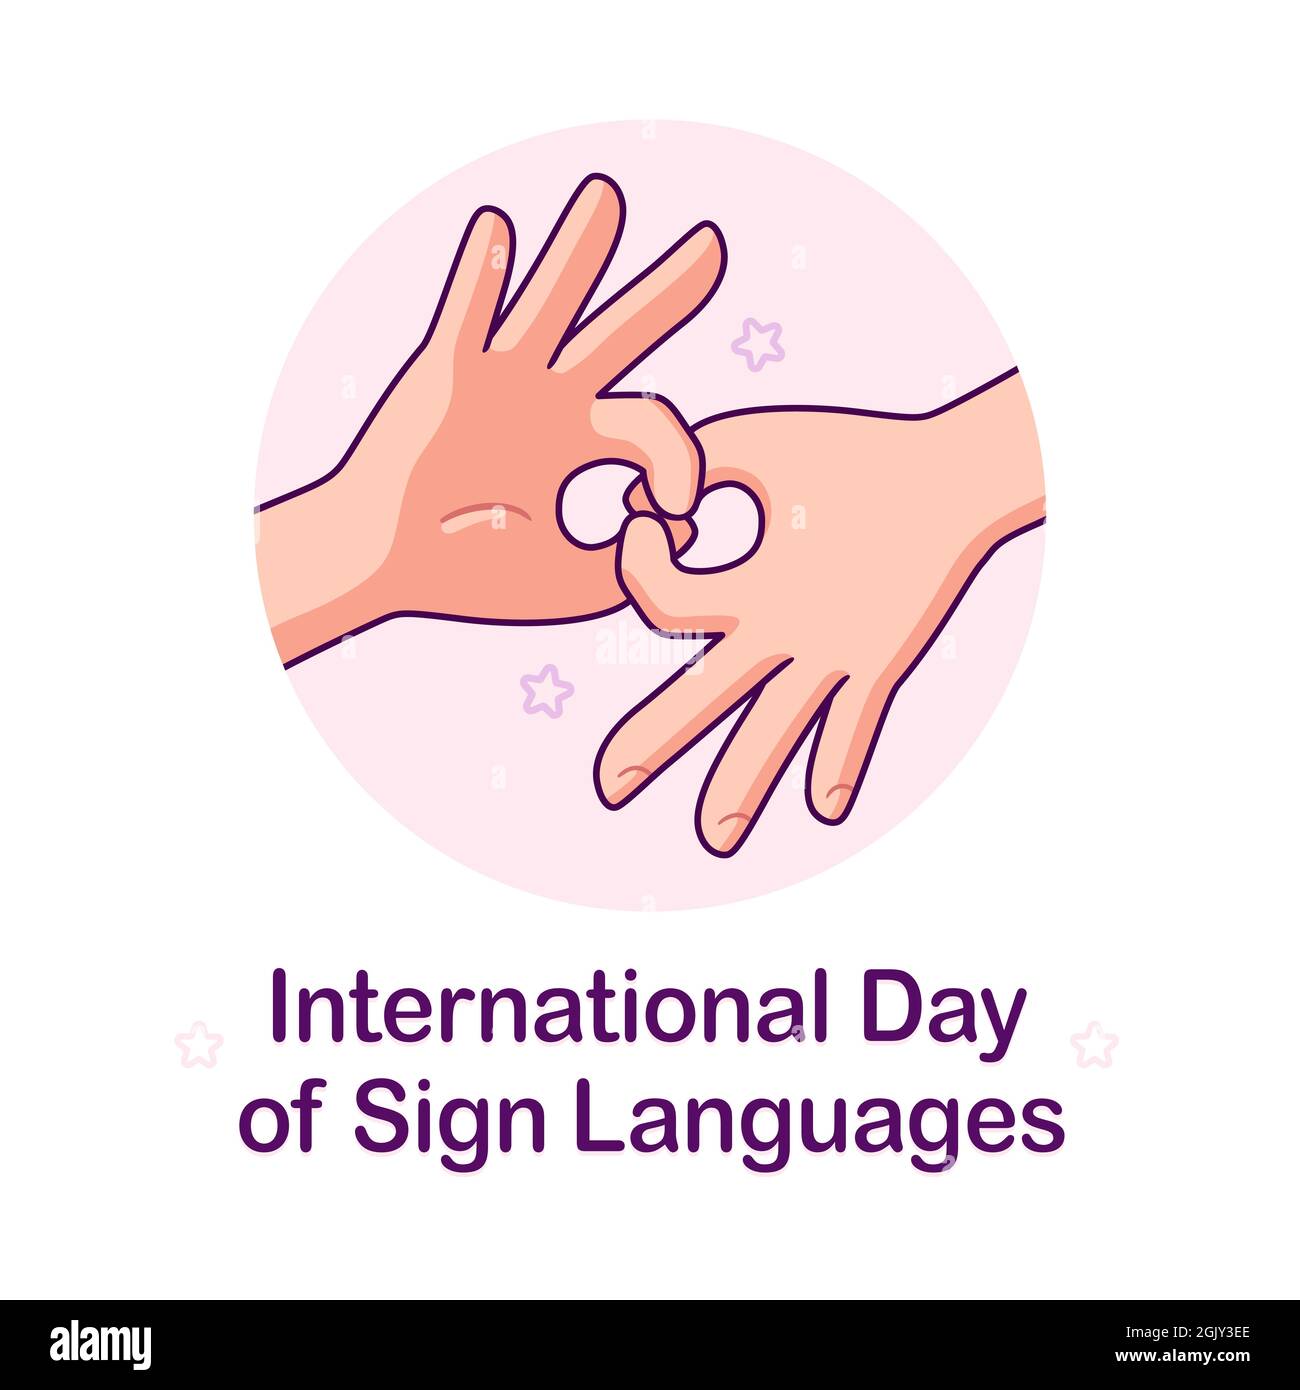 Affiche de la Journée internationale des langues des signes. Des mains de dessin animé faisant le symbole « se connecter ». Illustration vectorielle. Illustration de Vecteur